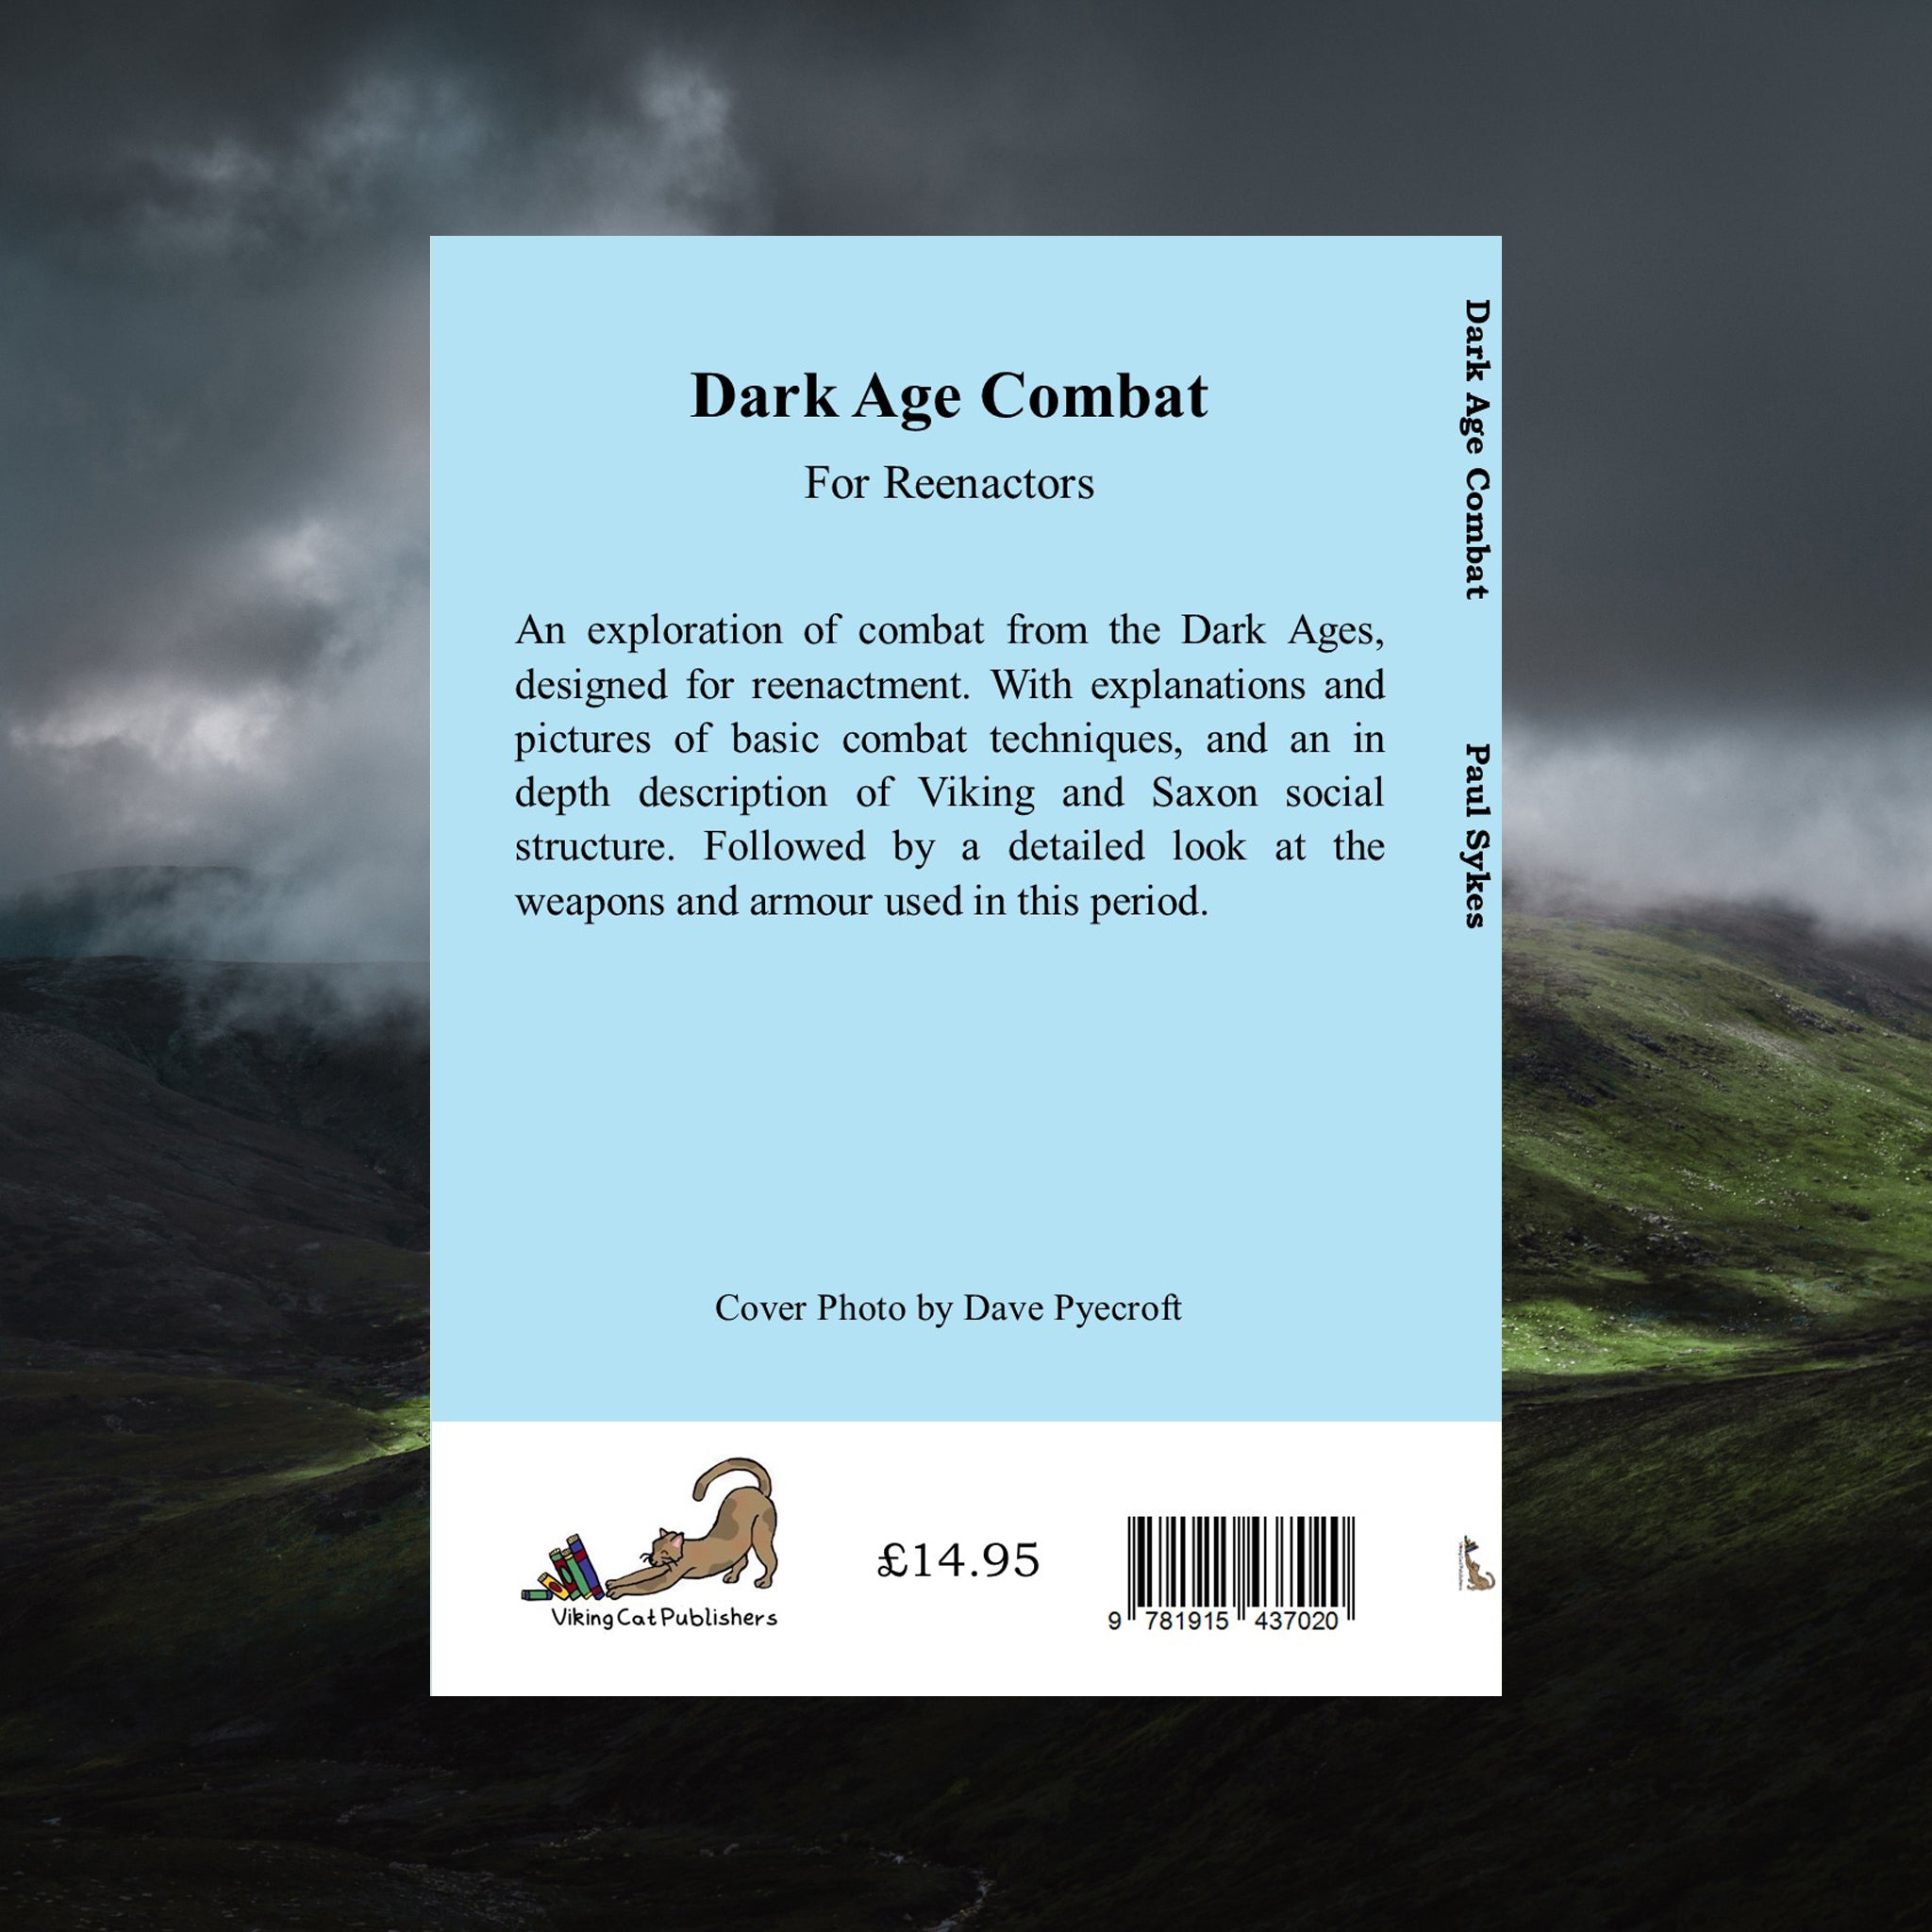 Dark Age Combat For Reenactors - Book - Paul Sykes - Back Cover